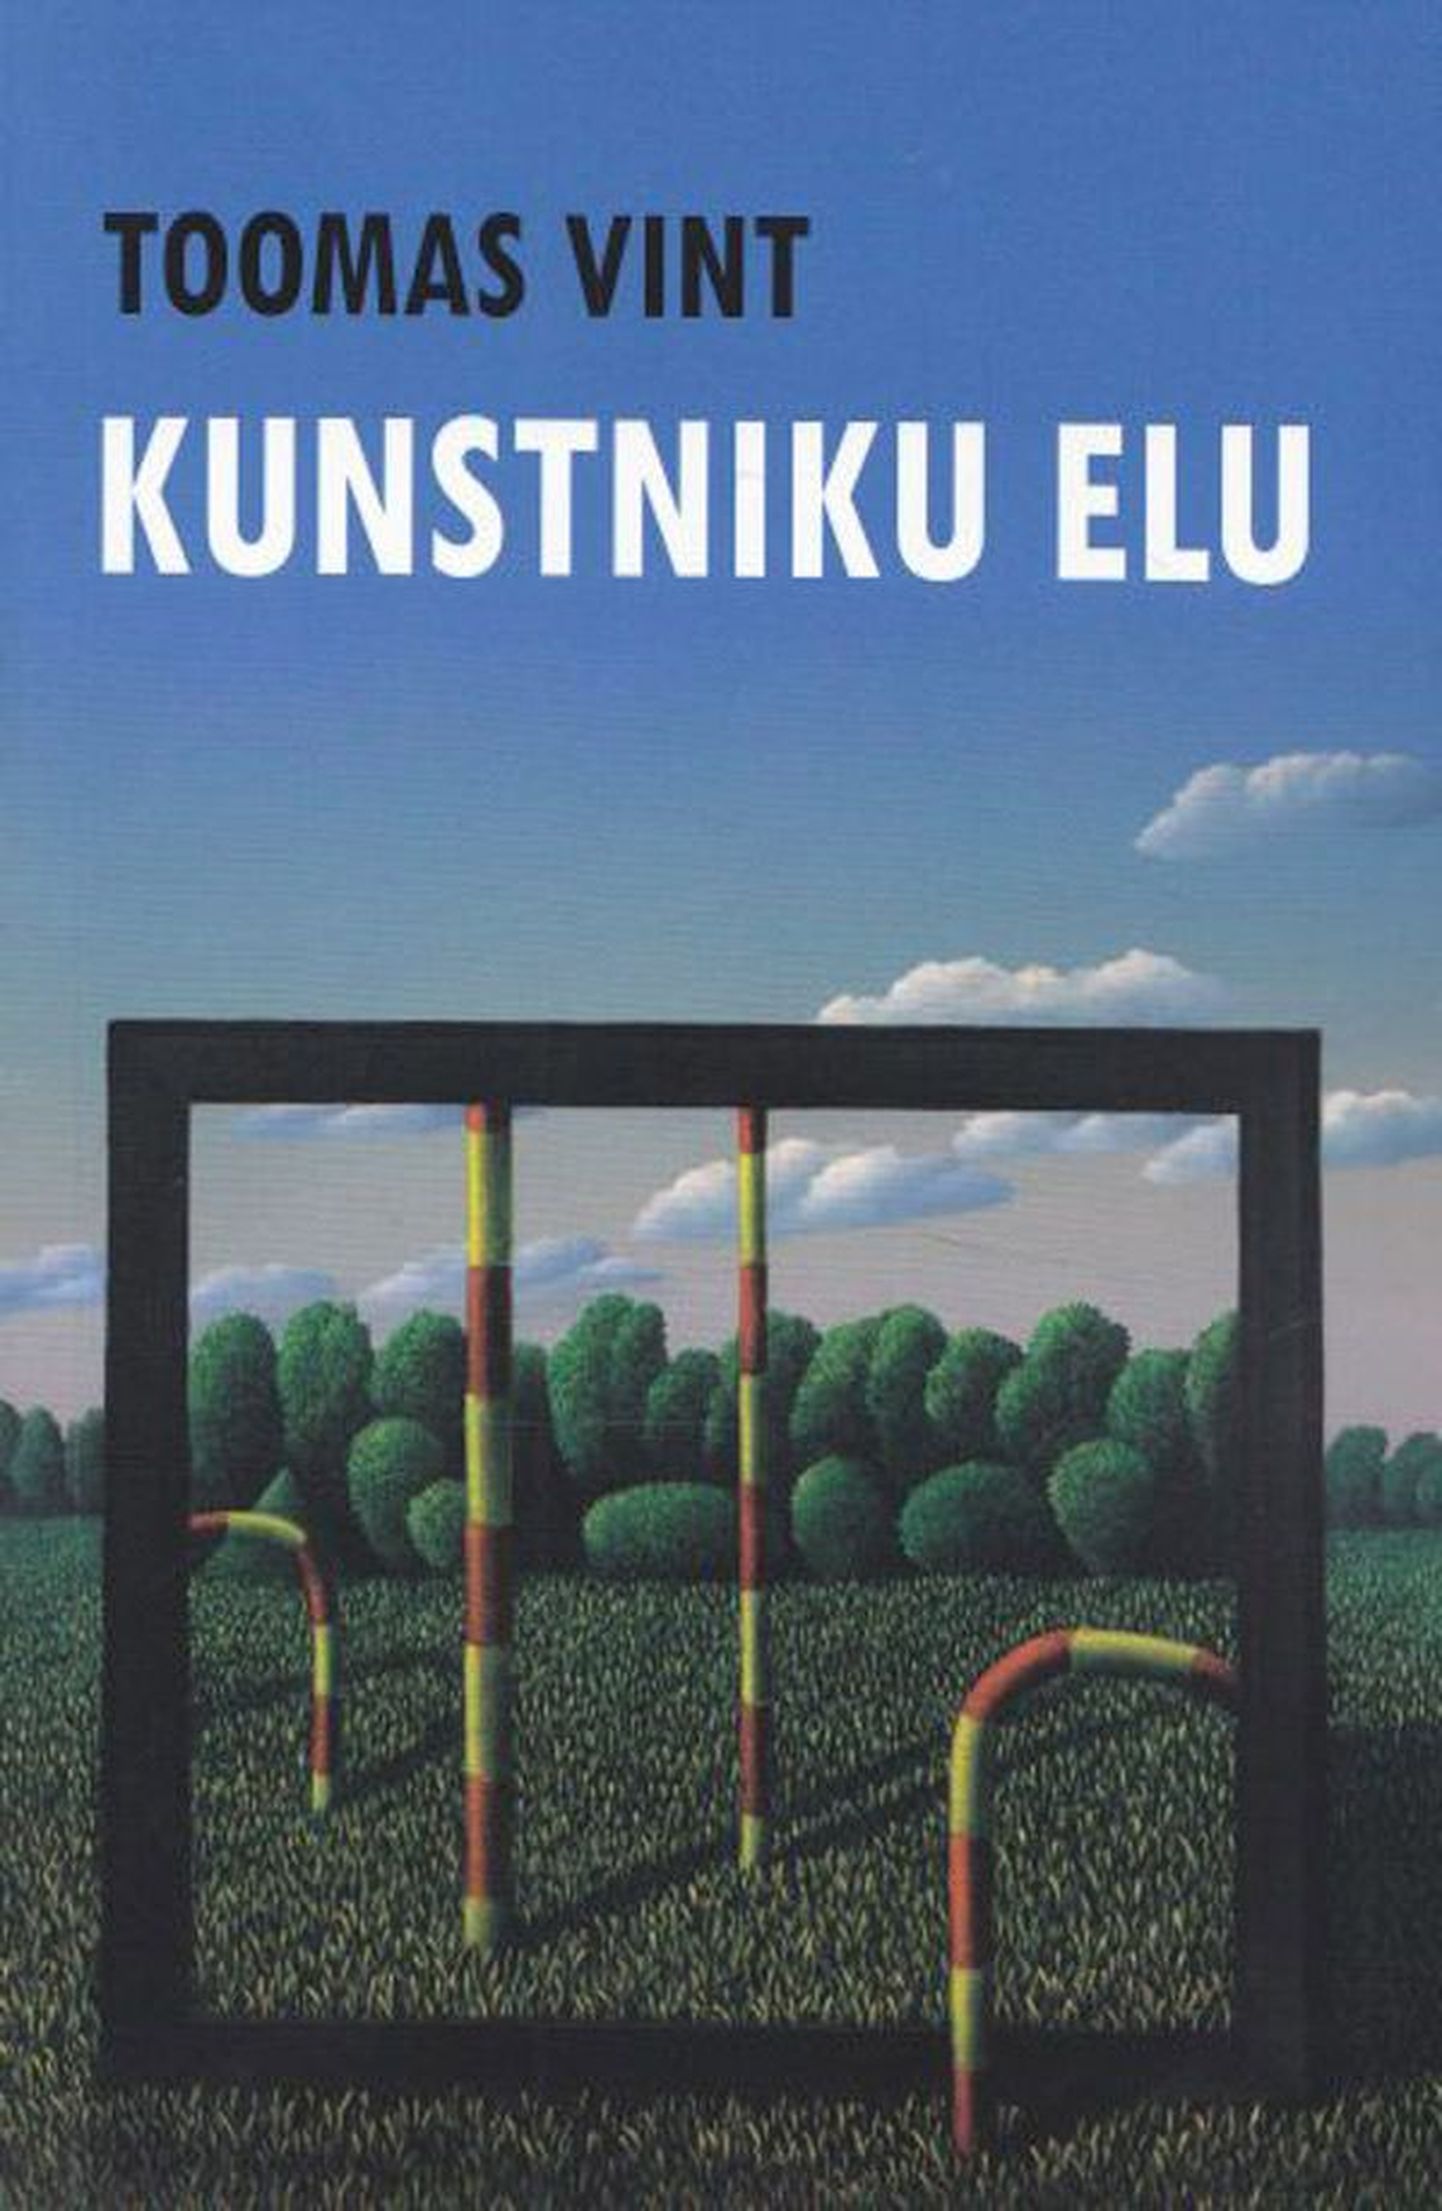 Raamat

Toomas 
Vint
«Kunstniku elu»
Tallinn, ­Tulikiri, 
2011
167 lk